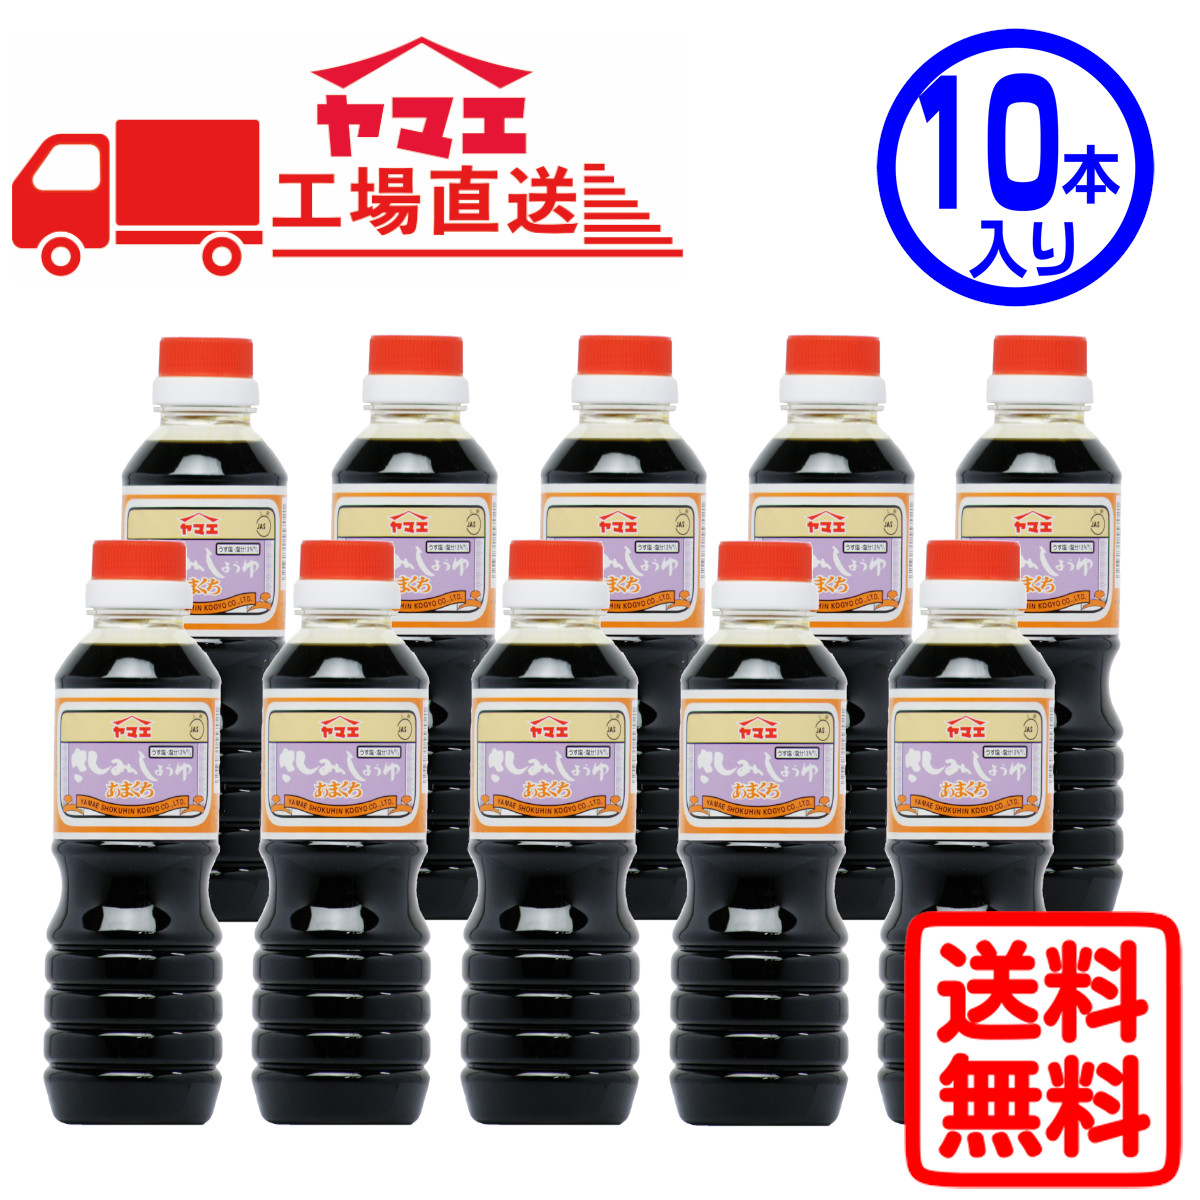 ヤマエ ヤマエ あまくちさしみ醤油 ペットボトル 360ml×10本 刺身醤油の商品画像